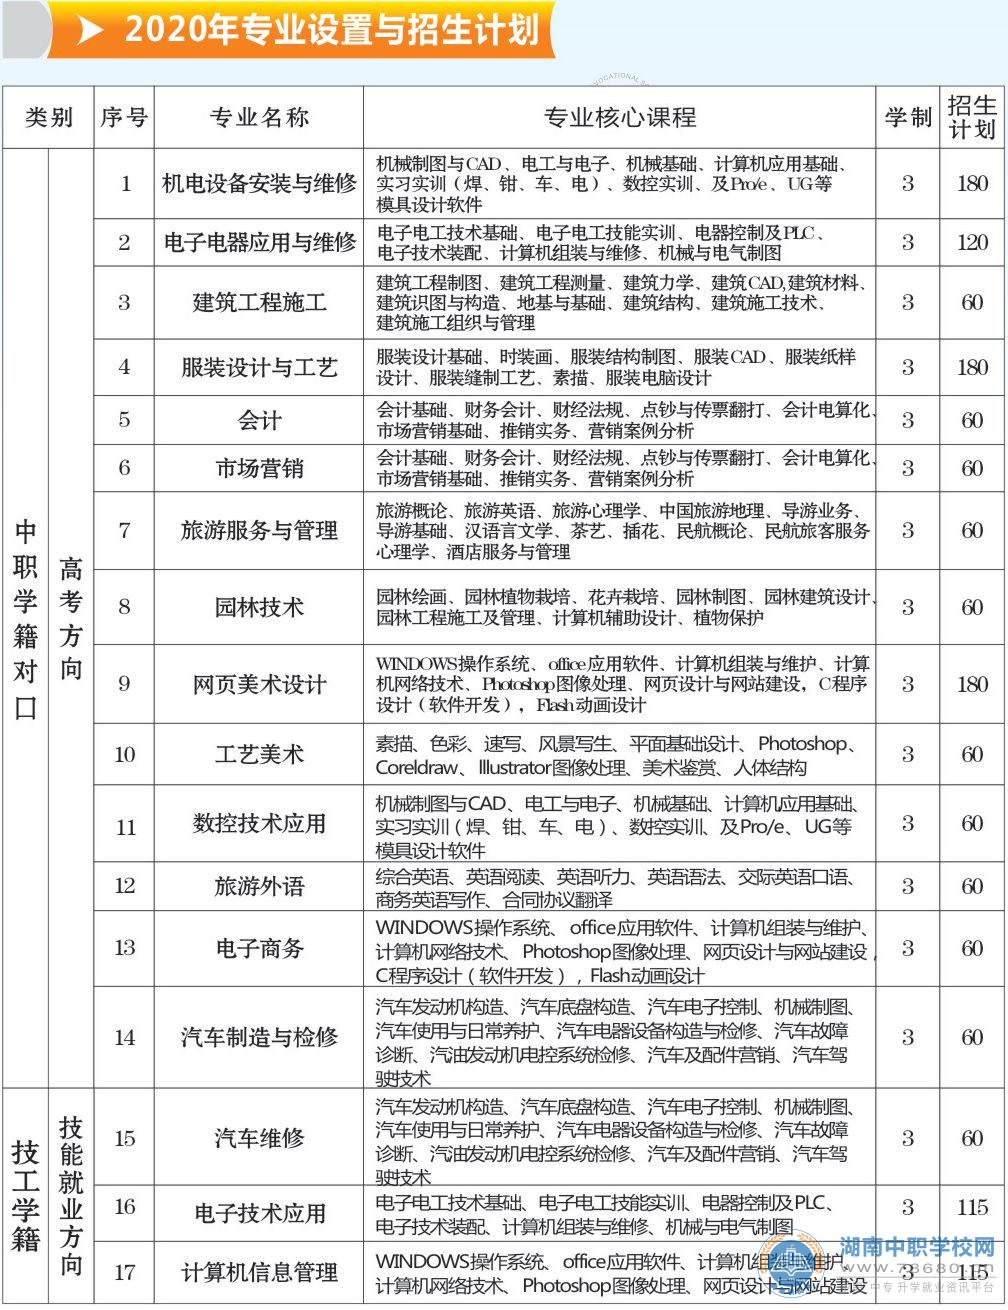 澧县职业中专学校2020年招生计划